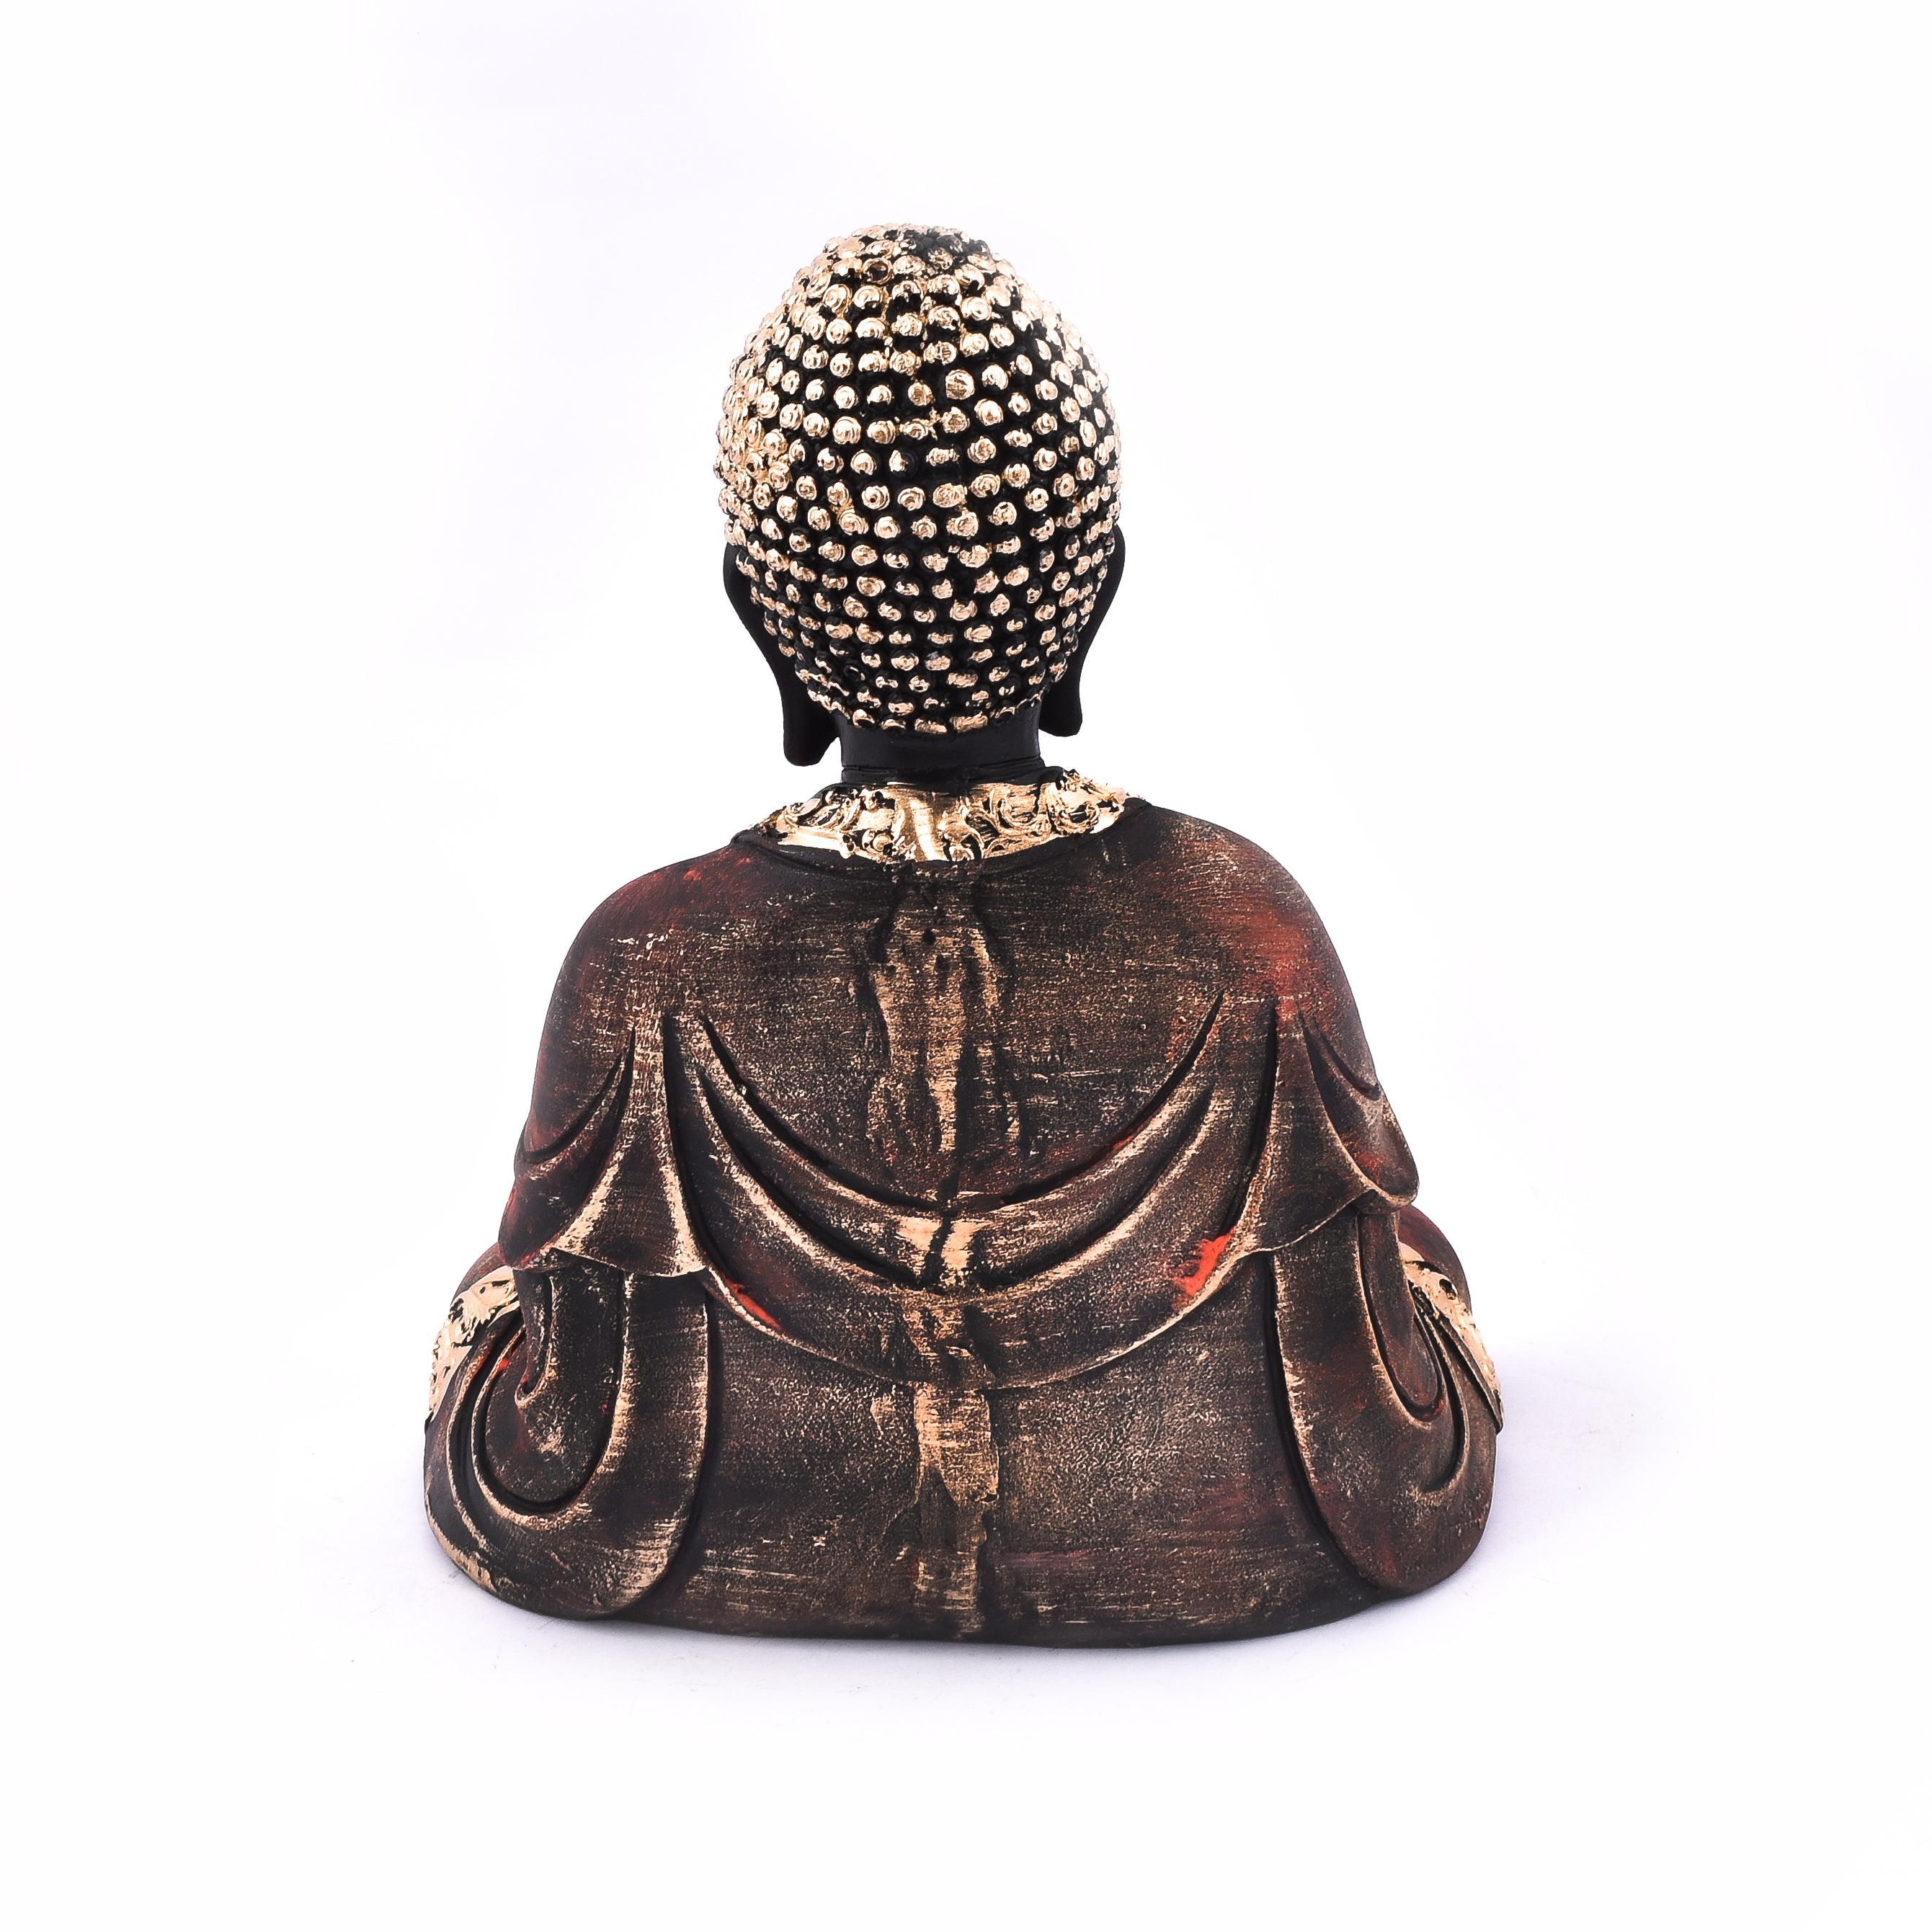 Buddha Idol Statue